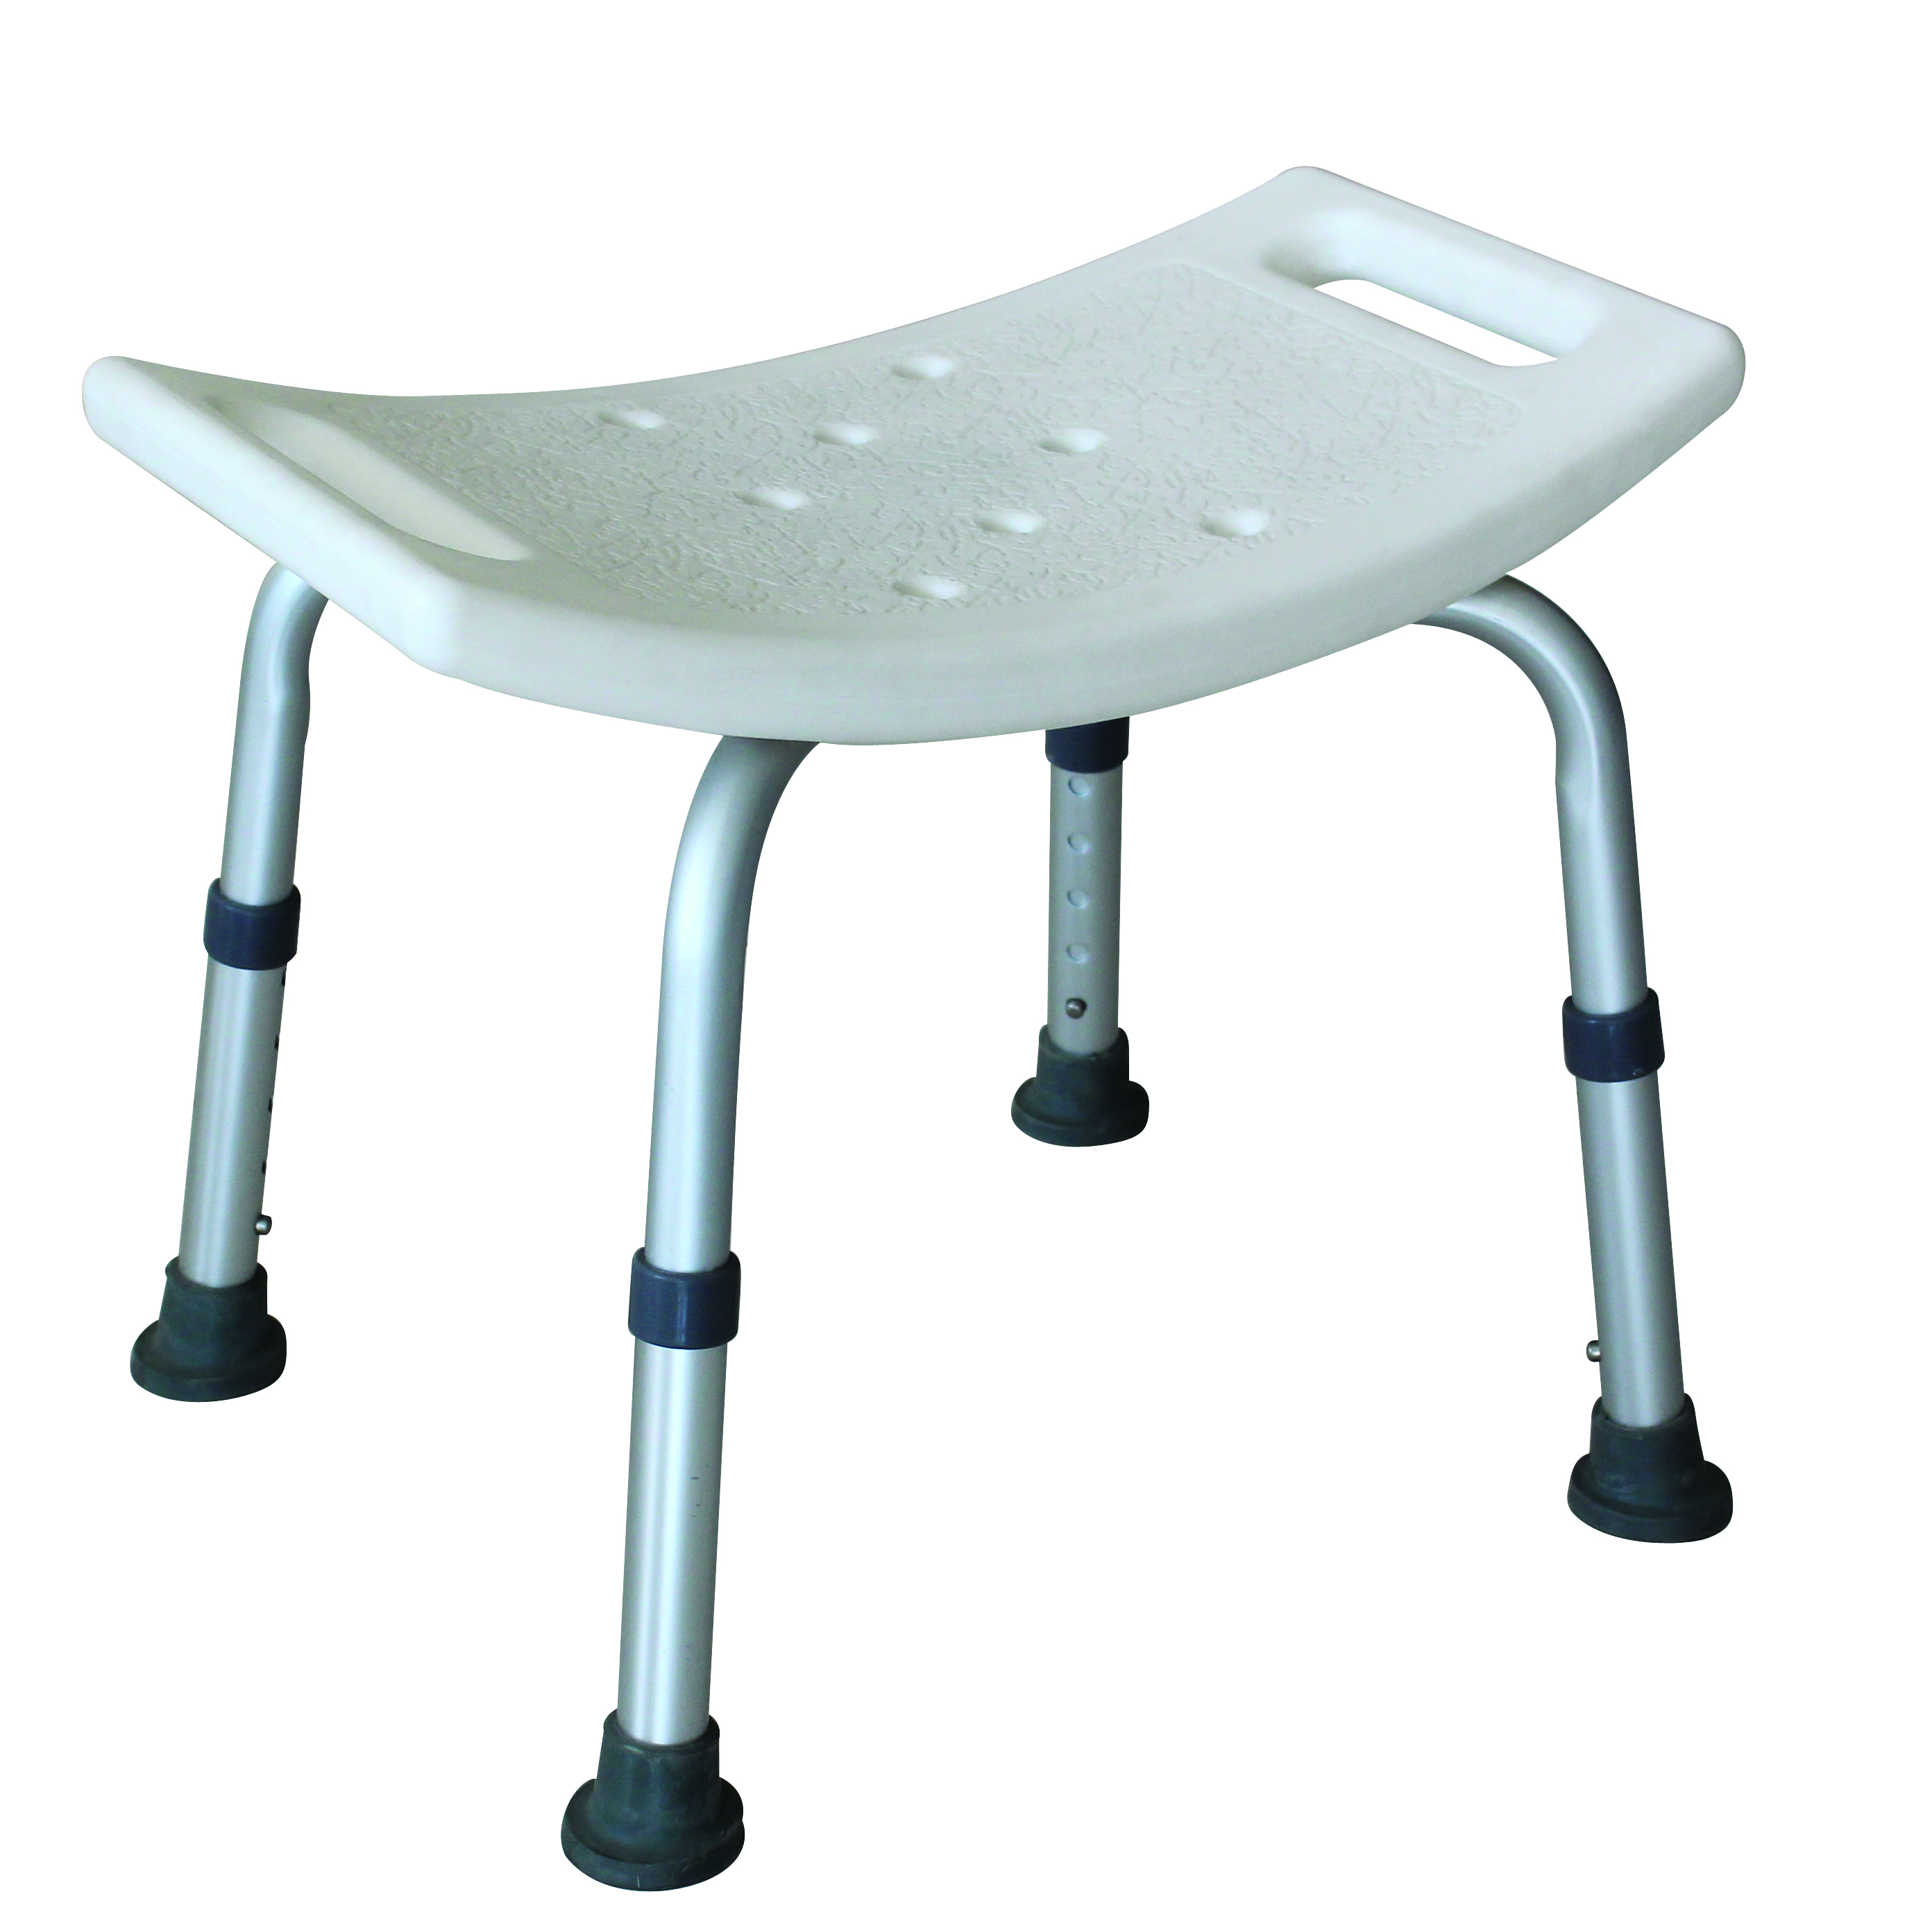 BAT-02 Chaise de bain en aluminium Romed sans dossier, avec orifi ces d‘égouttement et coussin antidérapant.